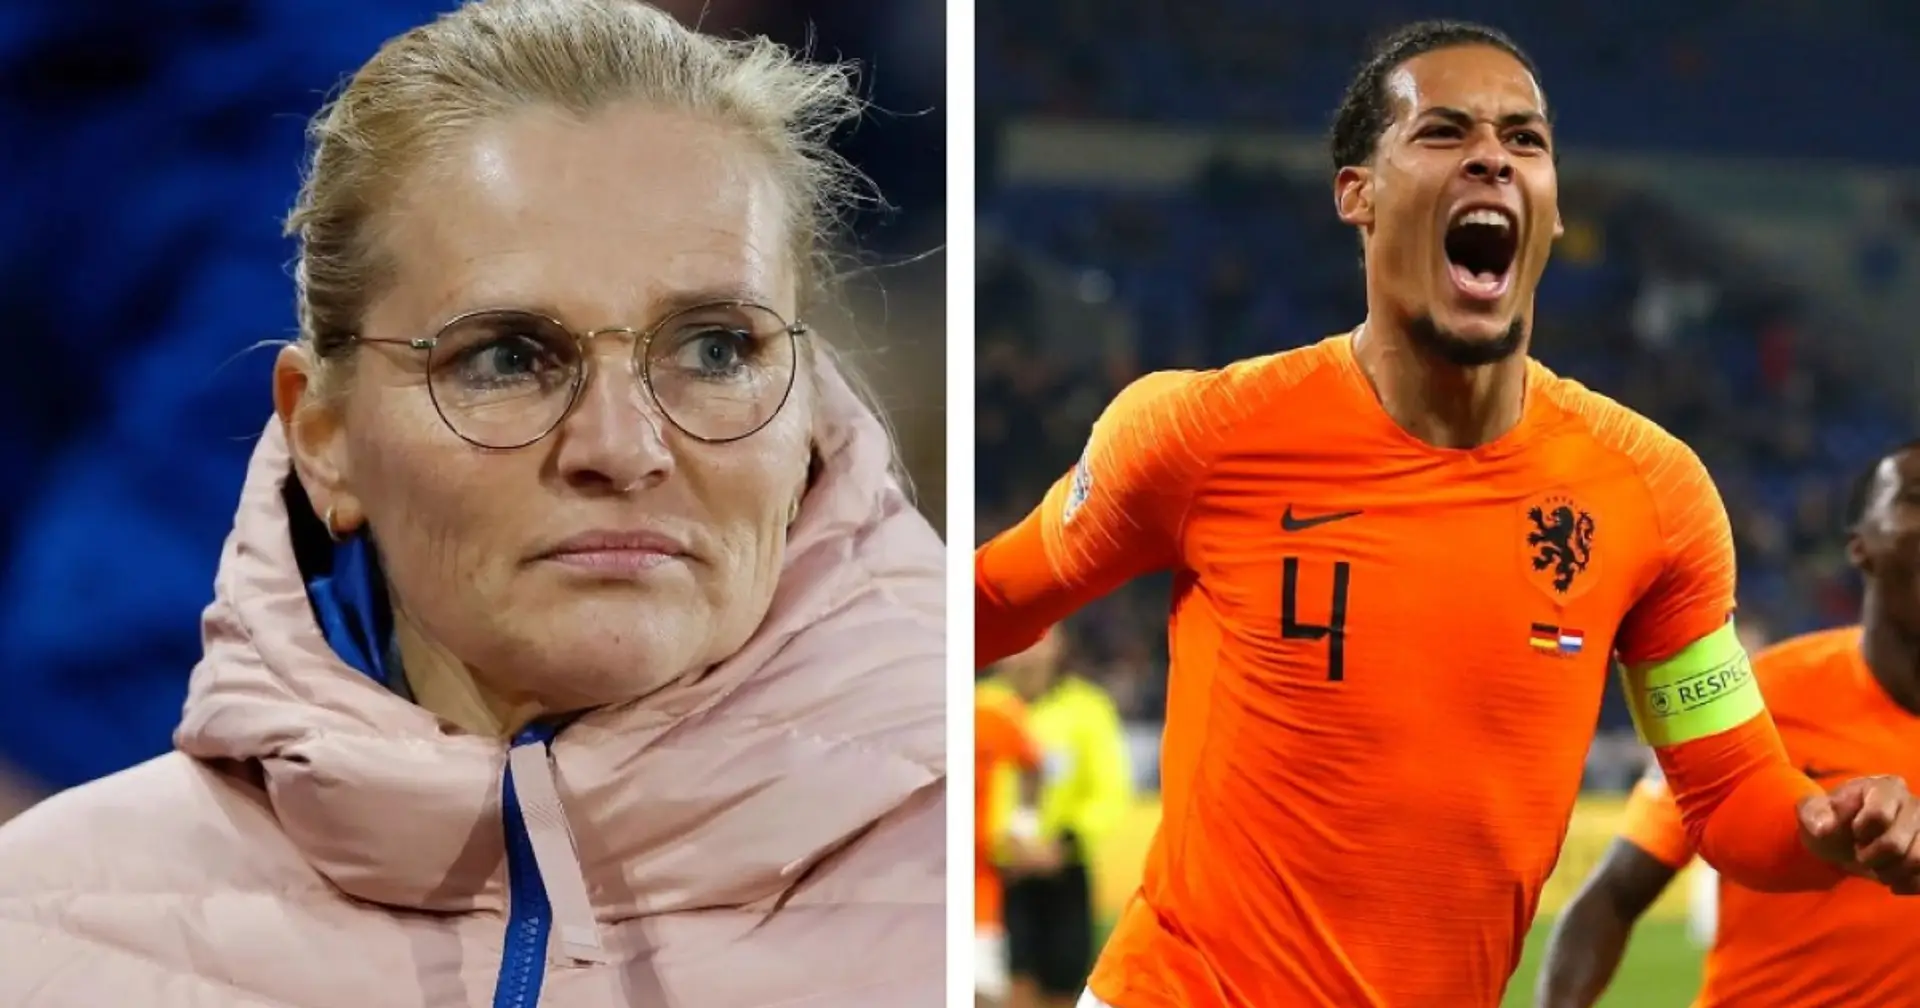 Eine Revolution steht bevor - die niederländische Nationalmannschaft der Männer könnte von einer Frau geleitet werden 😱 